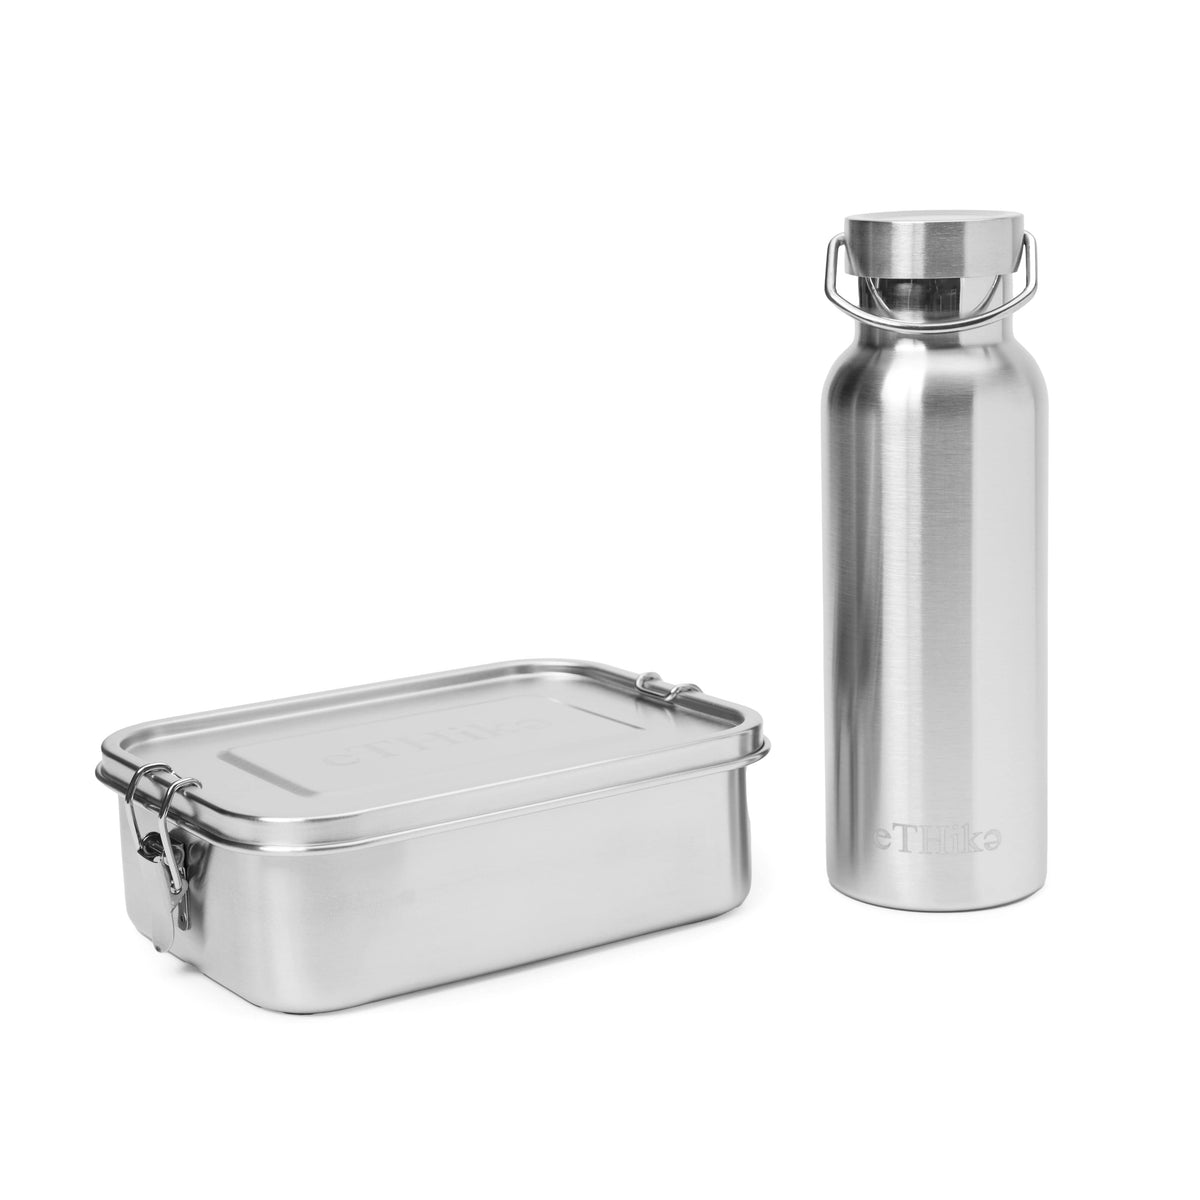 https://ethikainc.com/cdn/shop/files/ethika-inc-gifts-kits-zero-waste-starter-kit-stainless-steel-lunchbox-bottle-44848359375114_1200x1600.jpg?v=1697544993